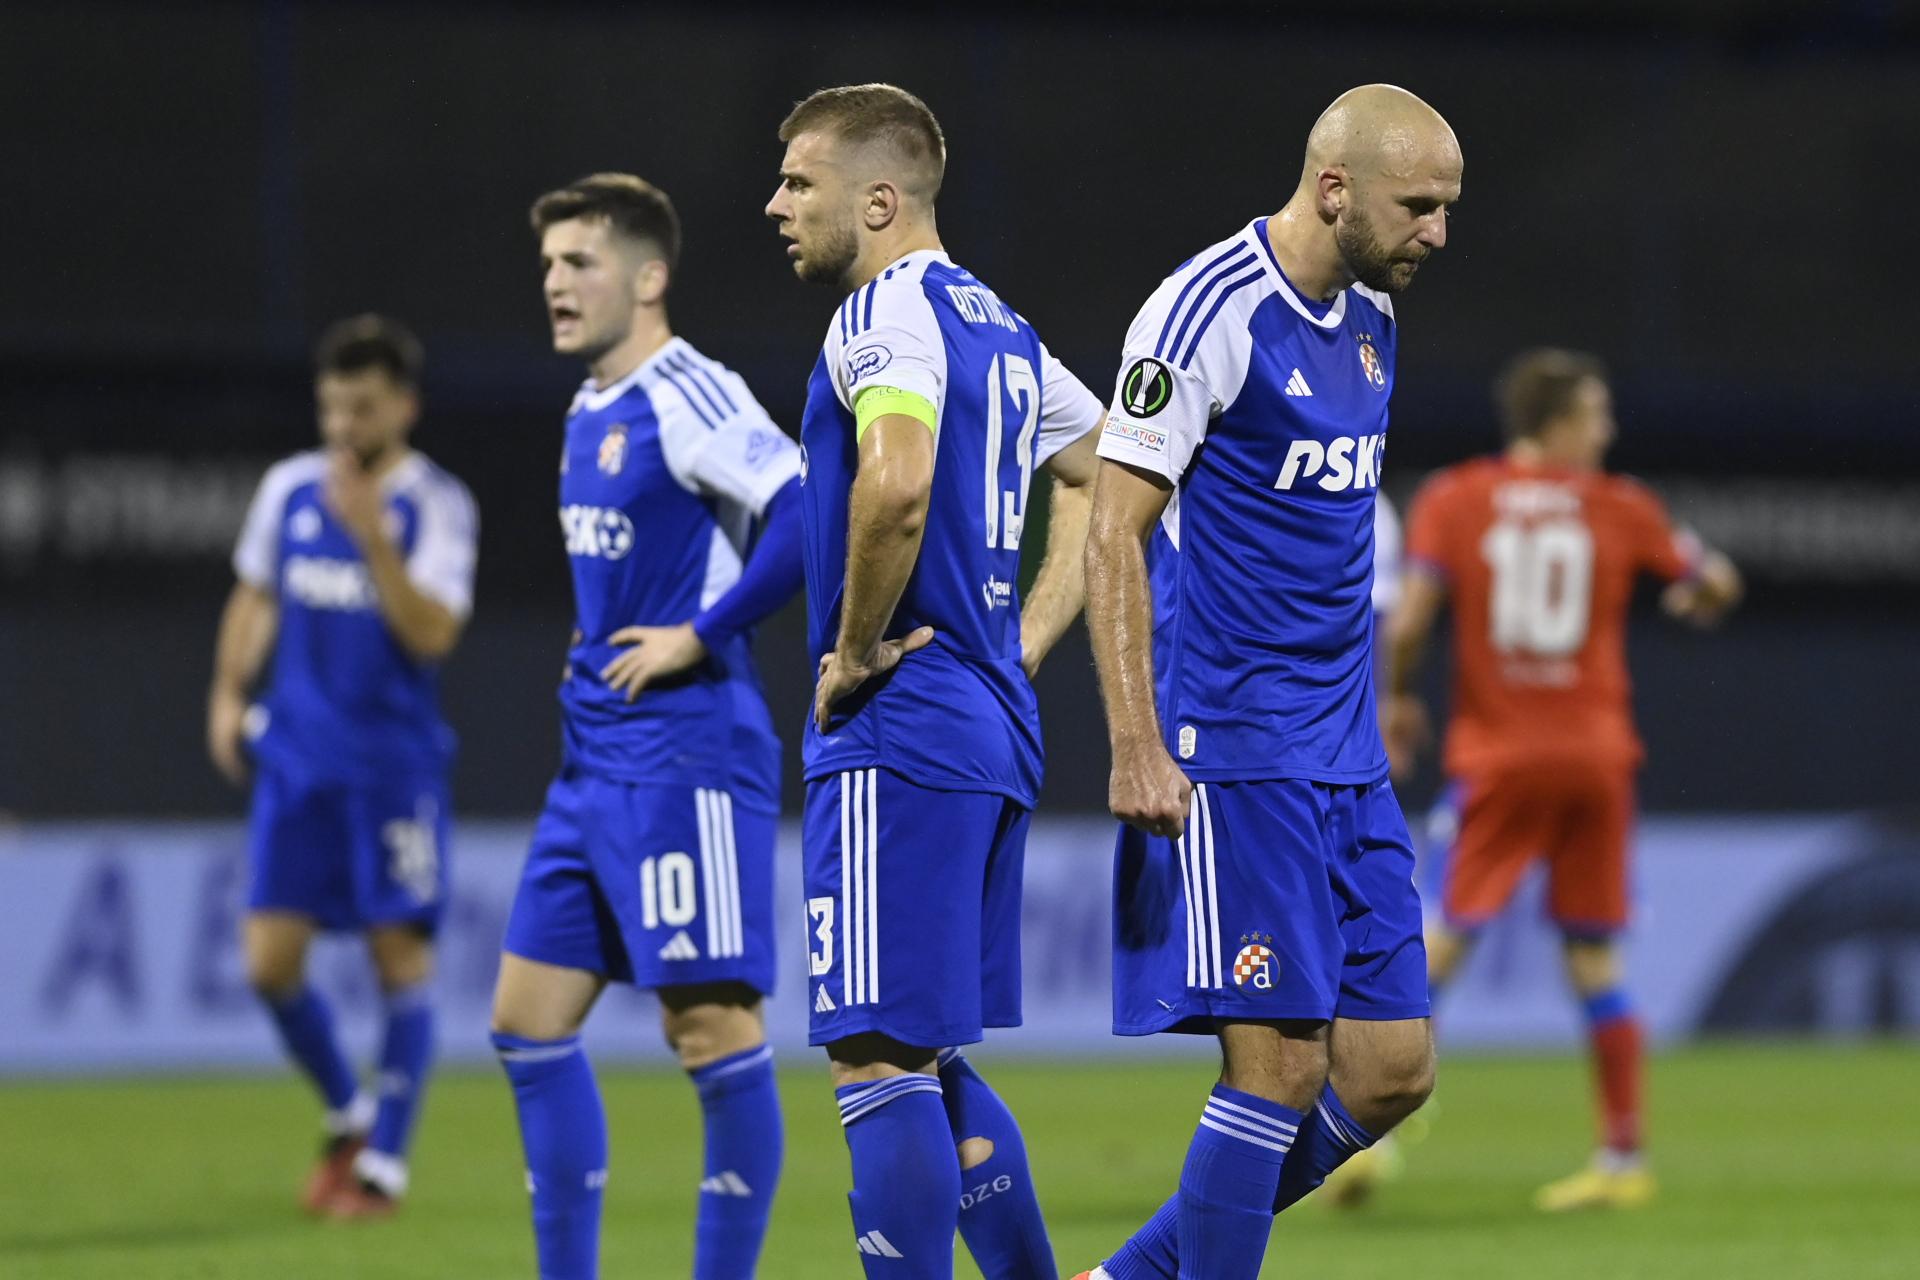 Sportske novosti - 'Žao mi je što se Dinamo doveo u ovu situaciju. Bišćan  je prebrzo smijenjen, a jednog igrača treba istrpjeti